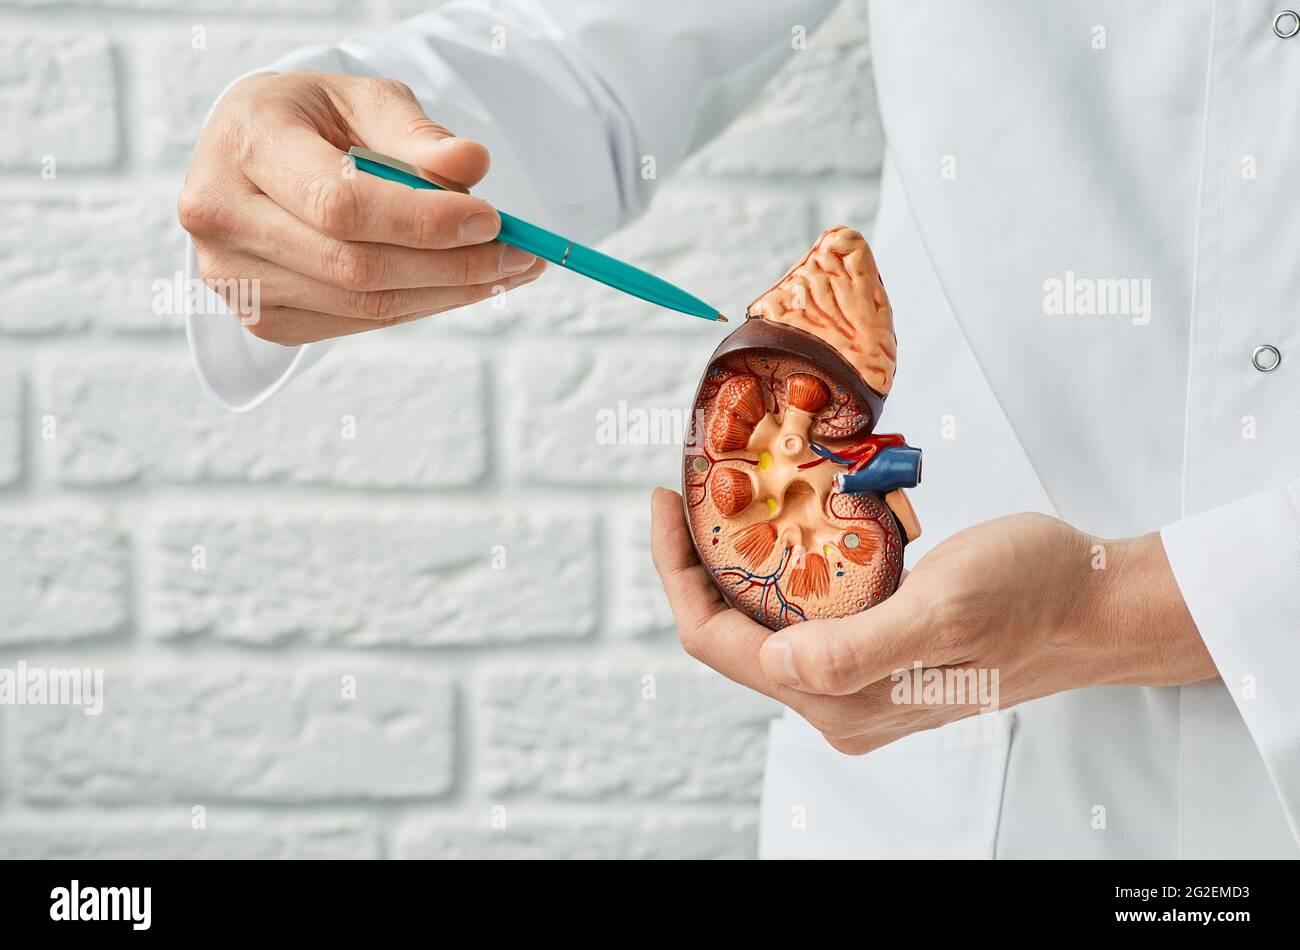 Concept de santé rénale. Gros plan, modèle anatomique du rein humain dans les mains du médecin. Urologie Banque D'Images